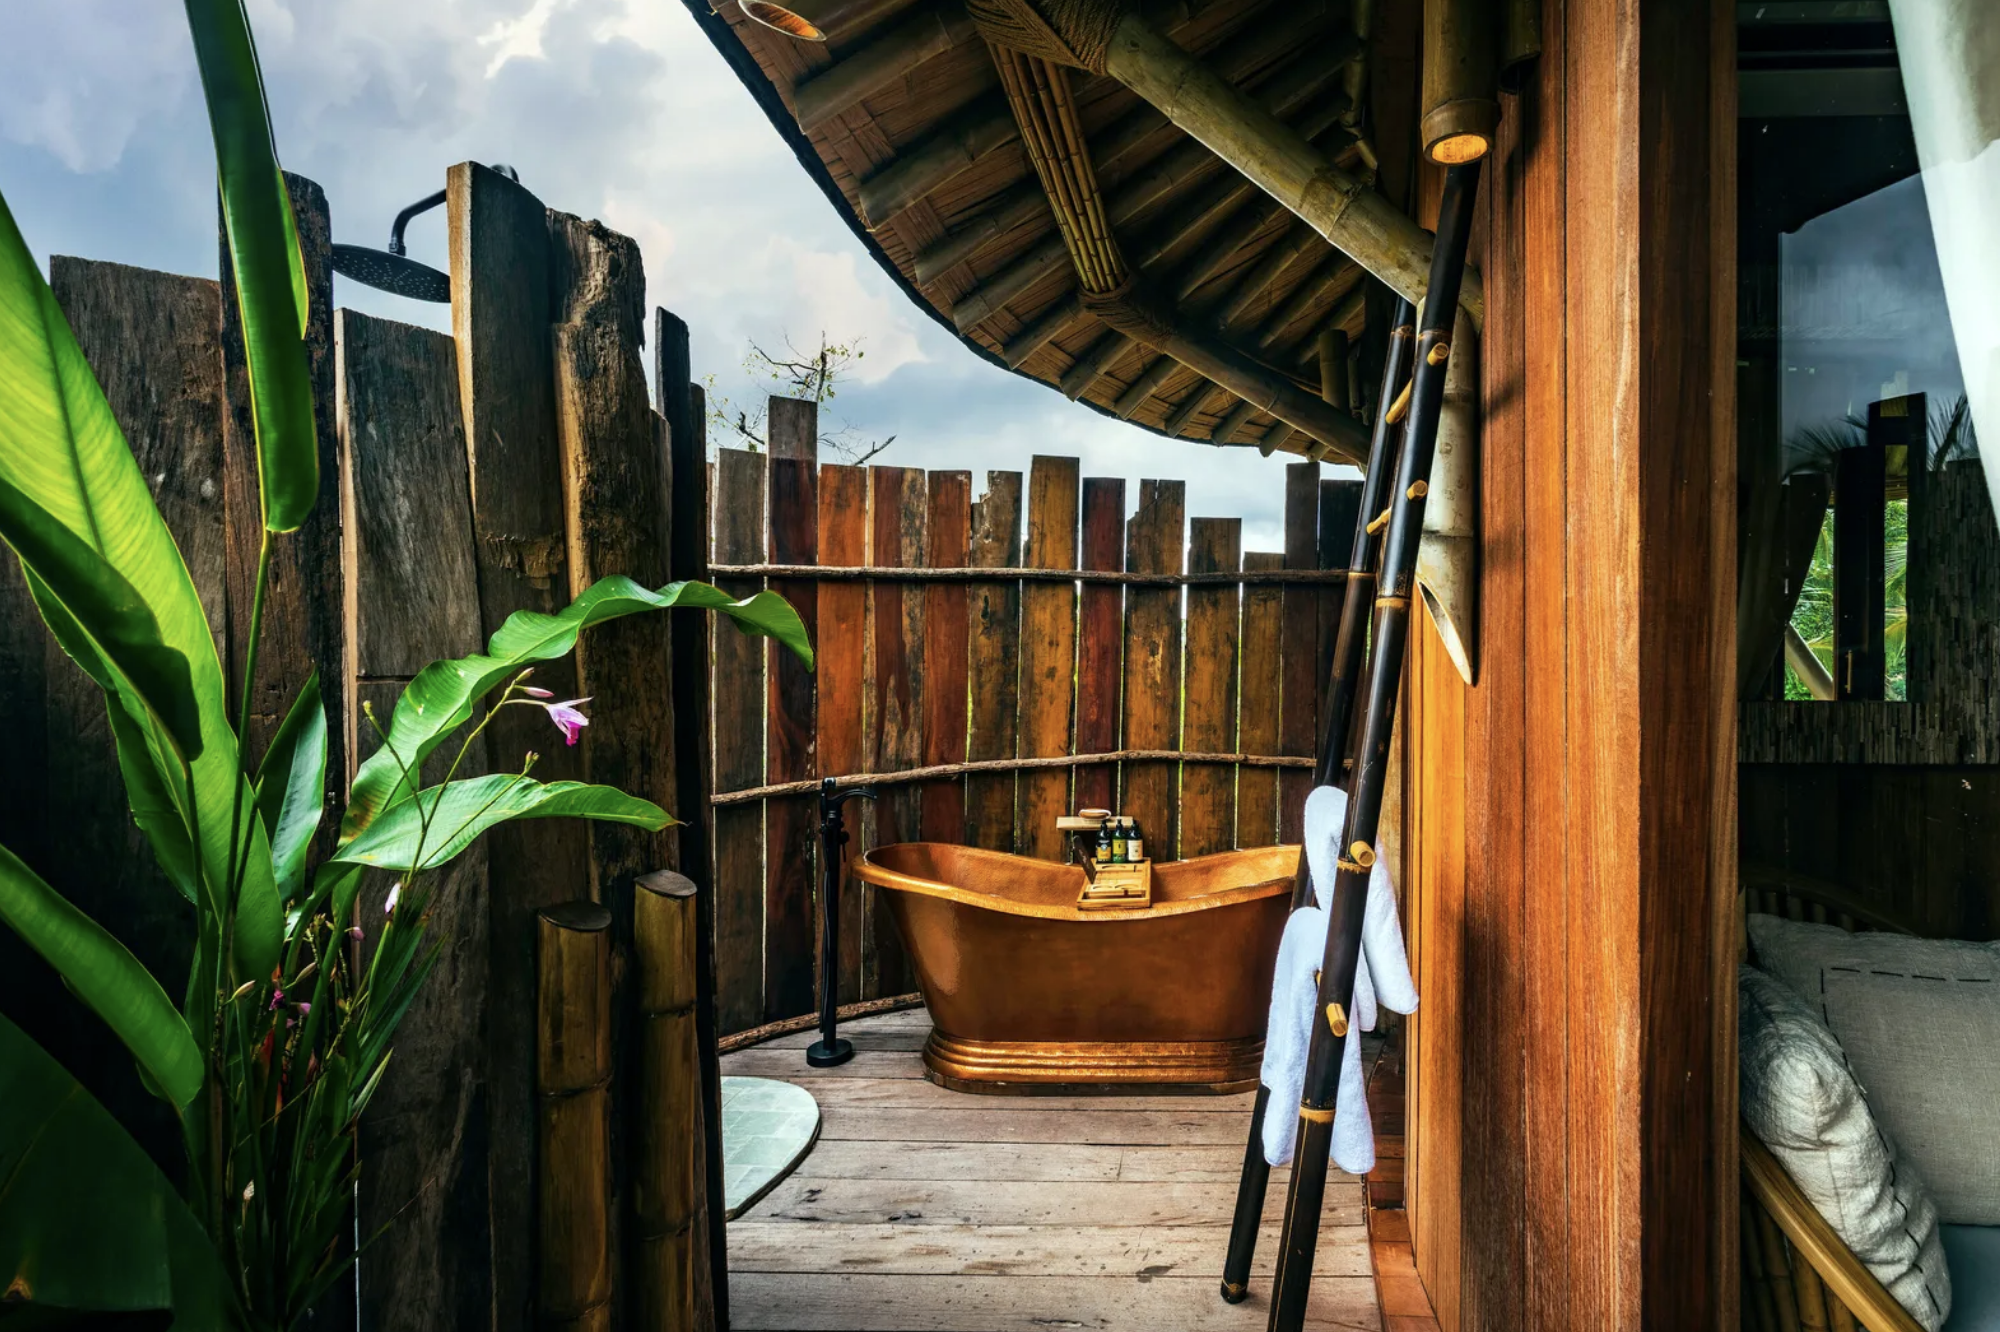 La tree house cuenta con un baño exterior para disfrutar de las vistas.